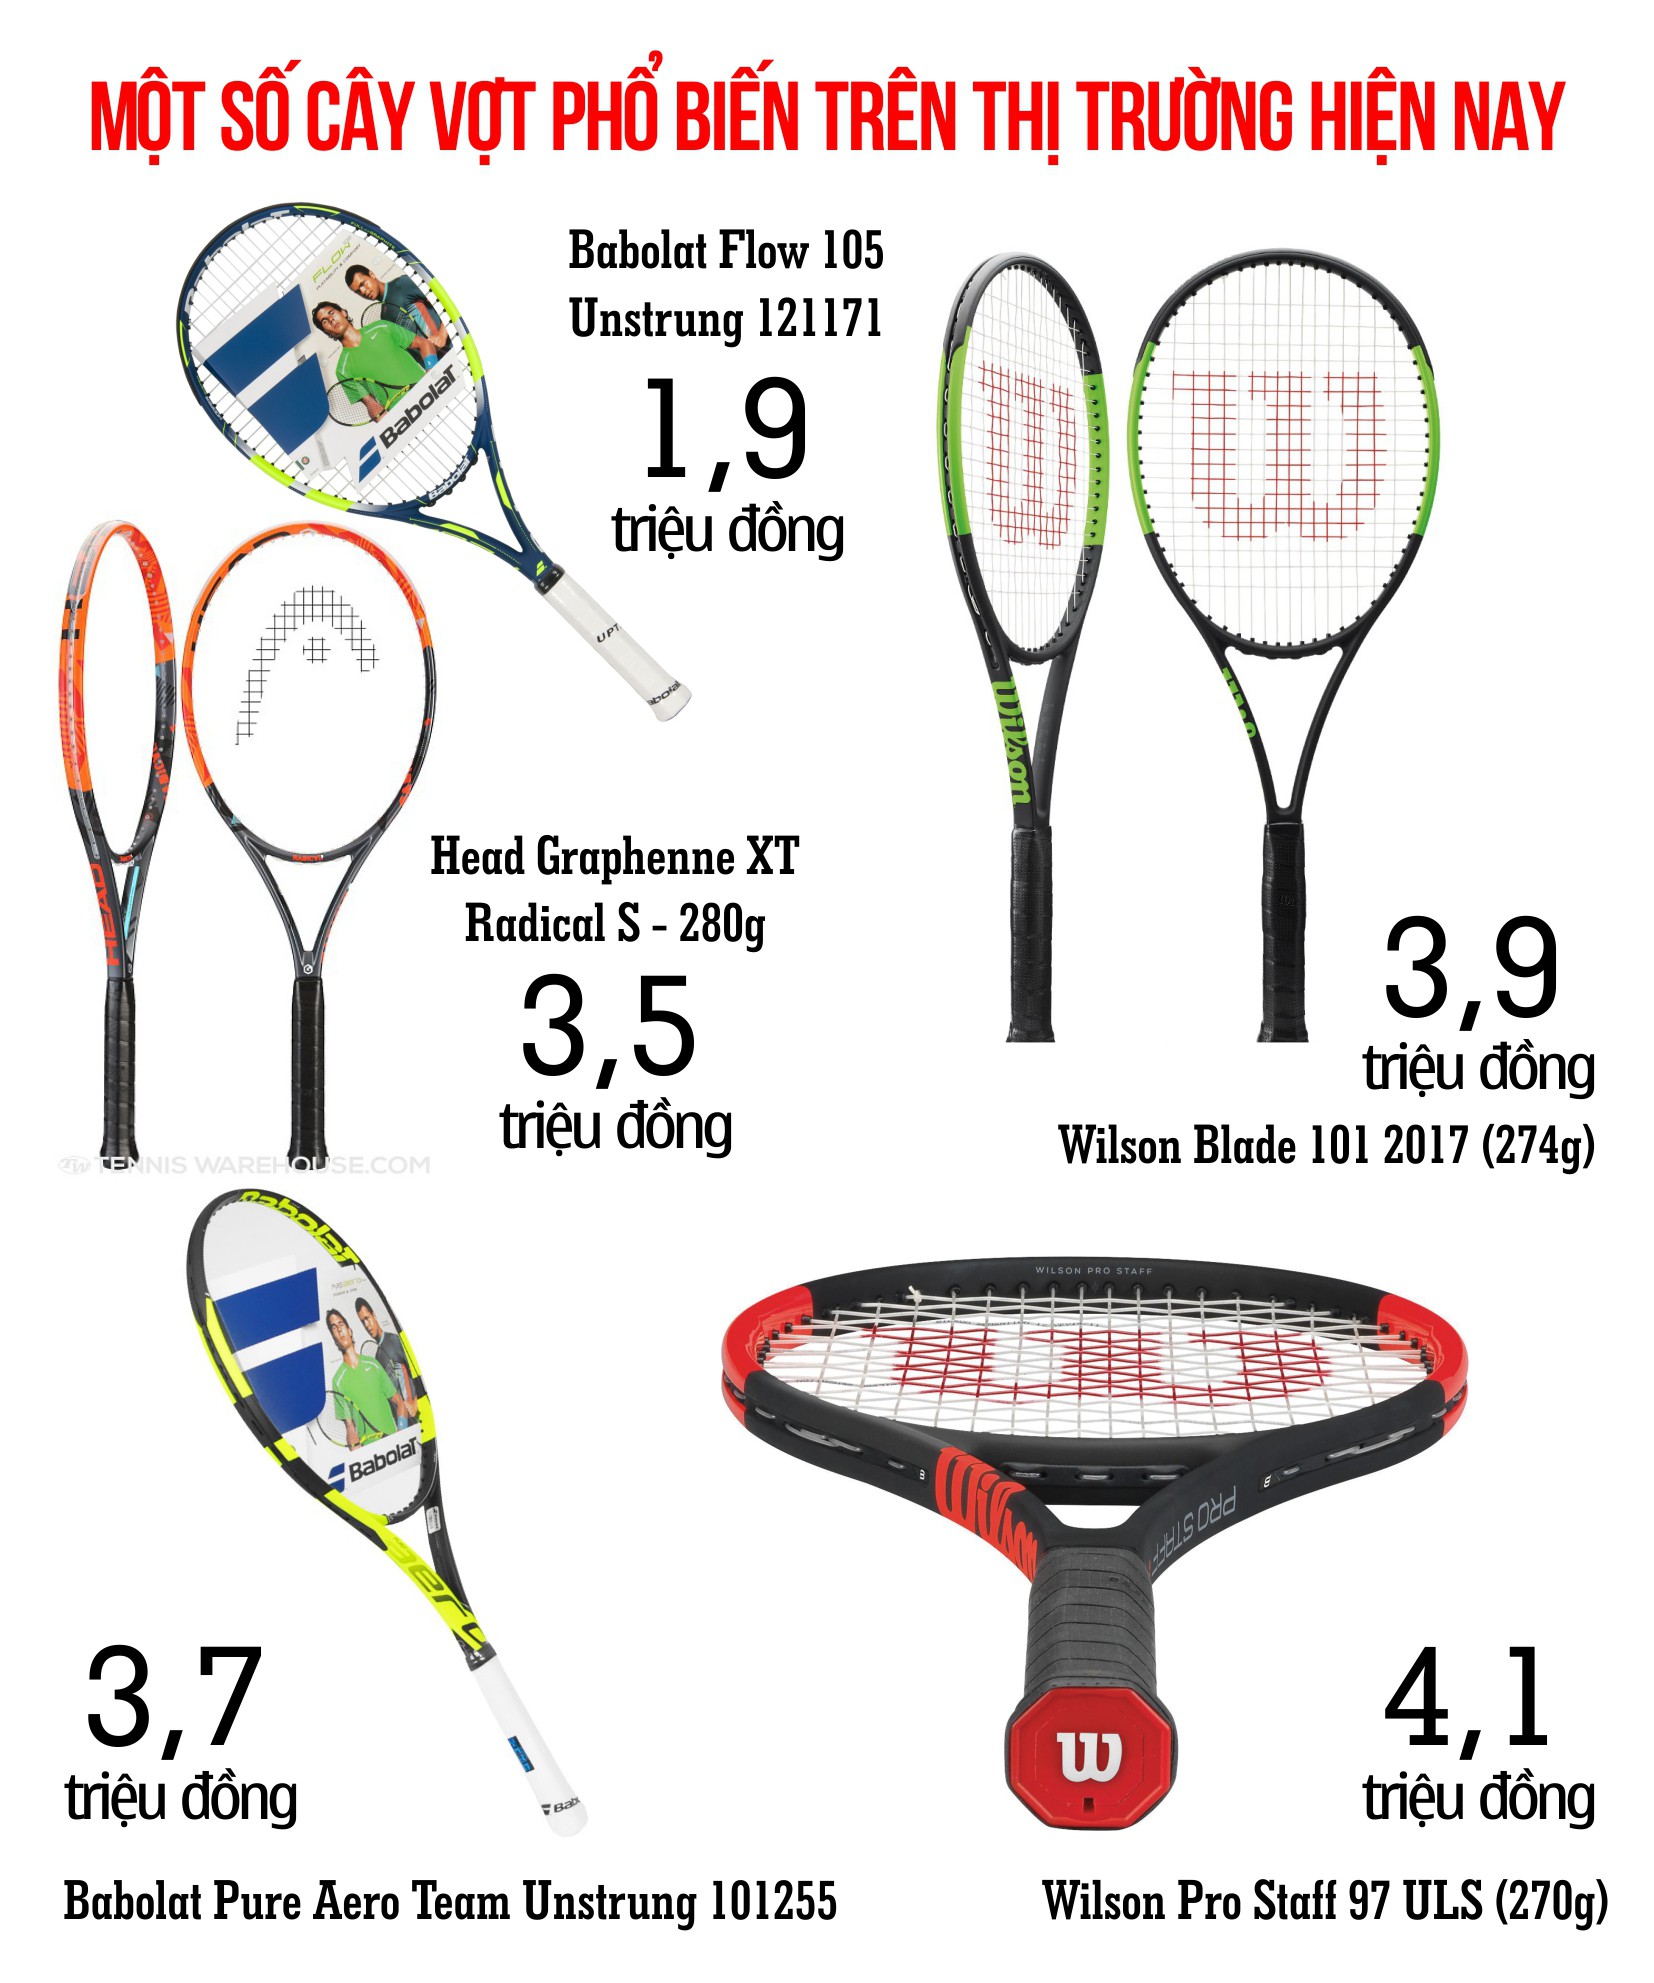 Một số cây vợt phổ biến trên thị trường hiện nay